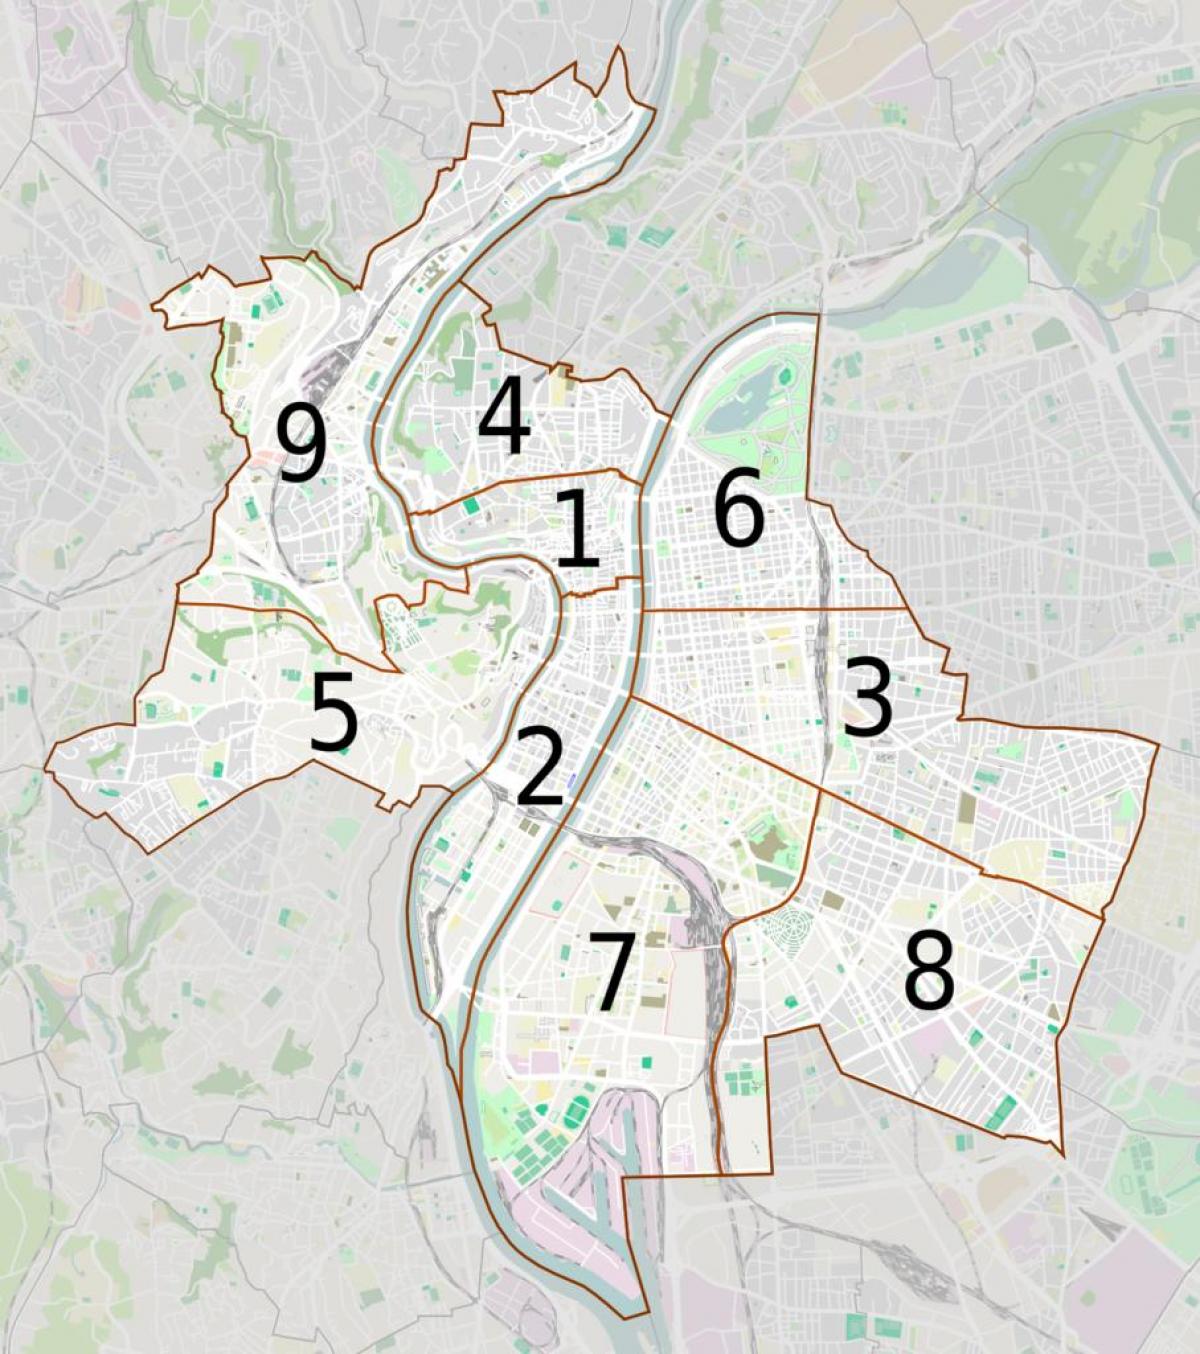 Karte des arrondissements von Lyon